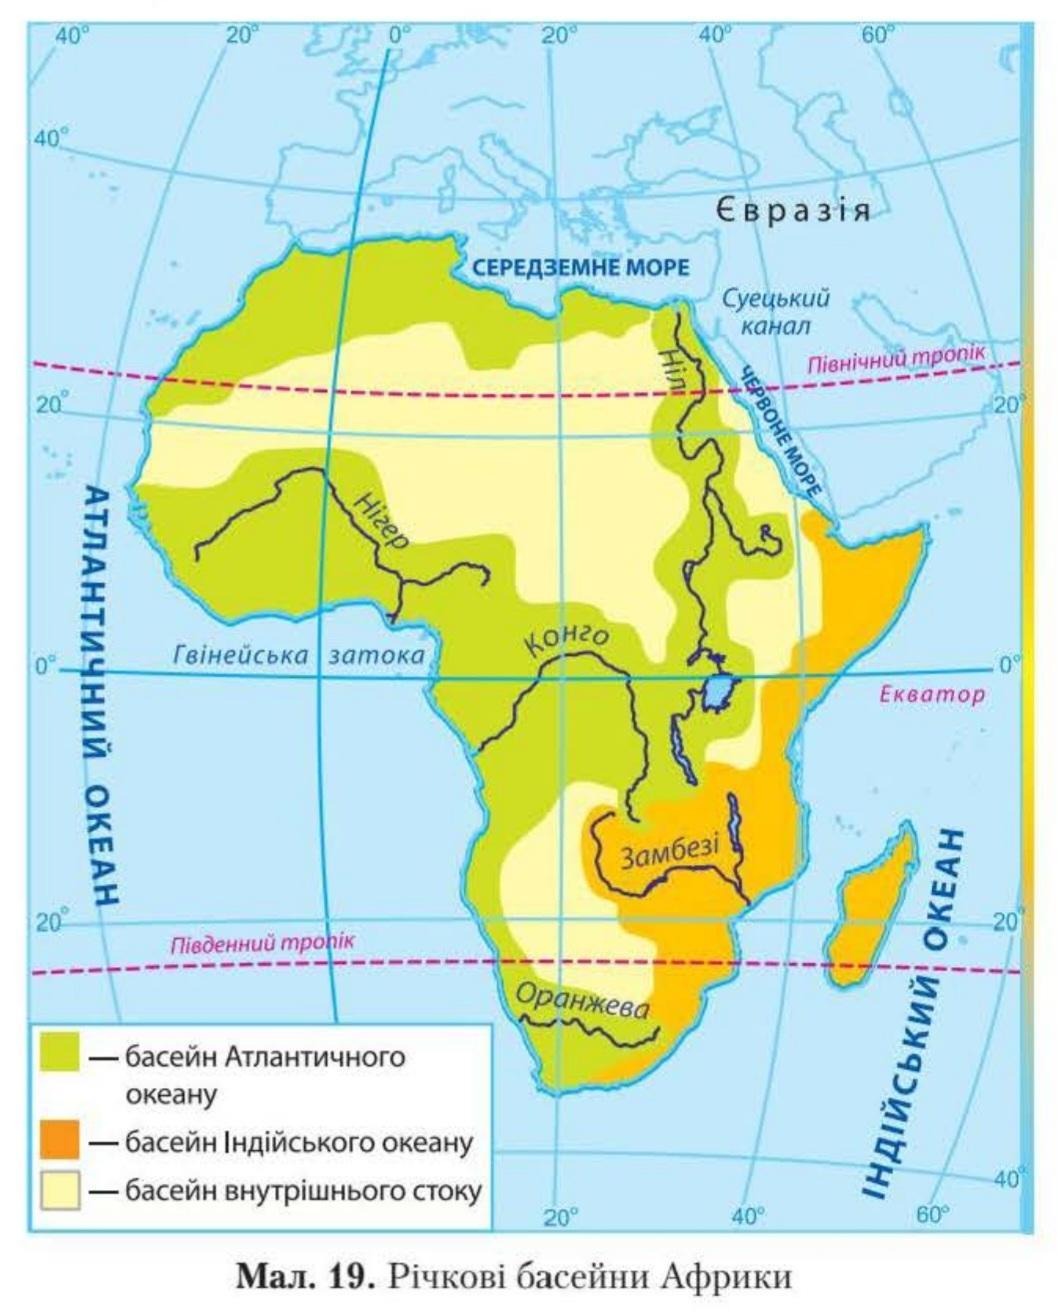 Реки и озера материка африки. Бассейны рек Африки на карте. Речные бассейны Африки на карте. Реки Африки на карте. Основные речные бассейны Африки на карте.